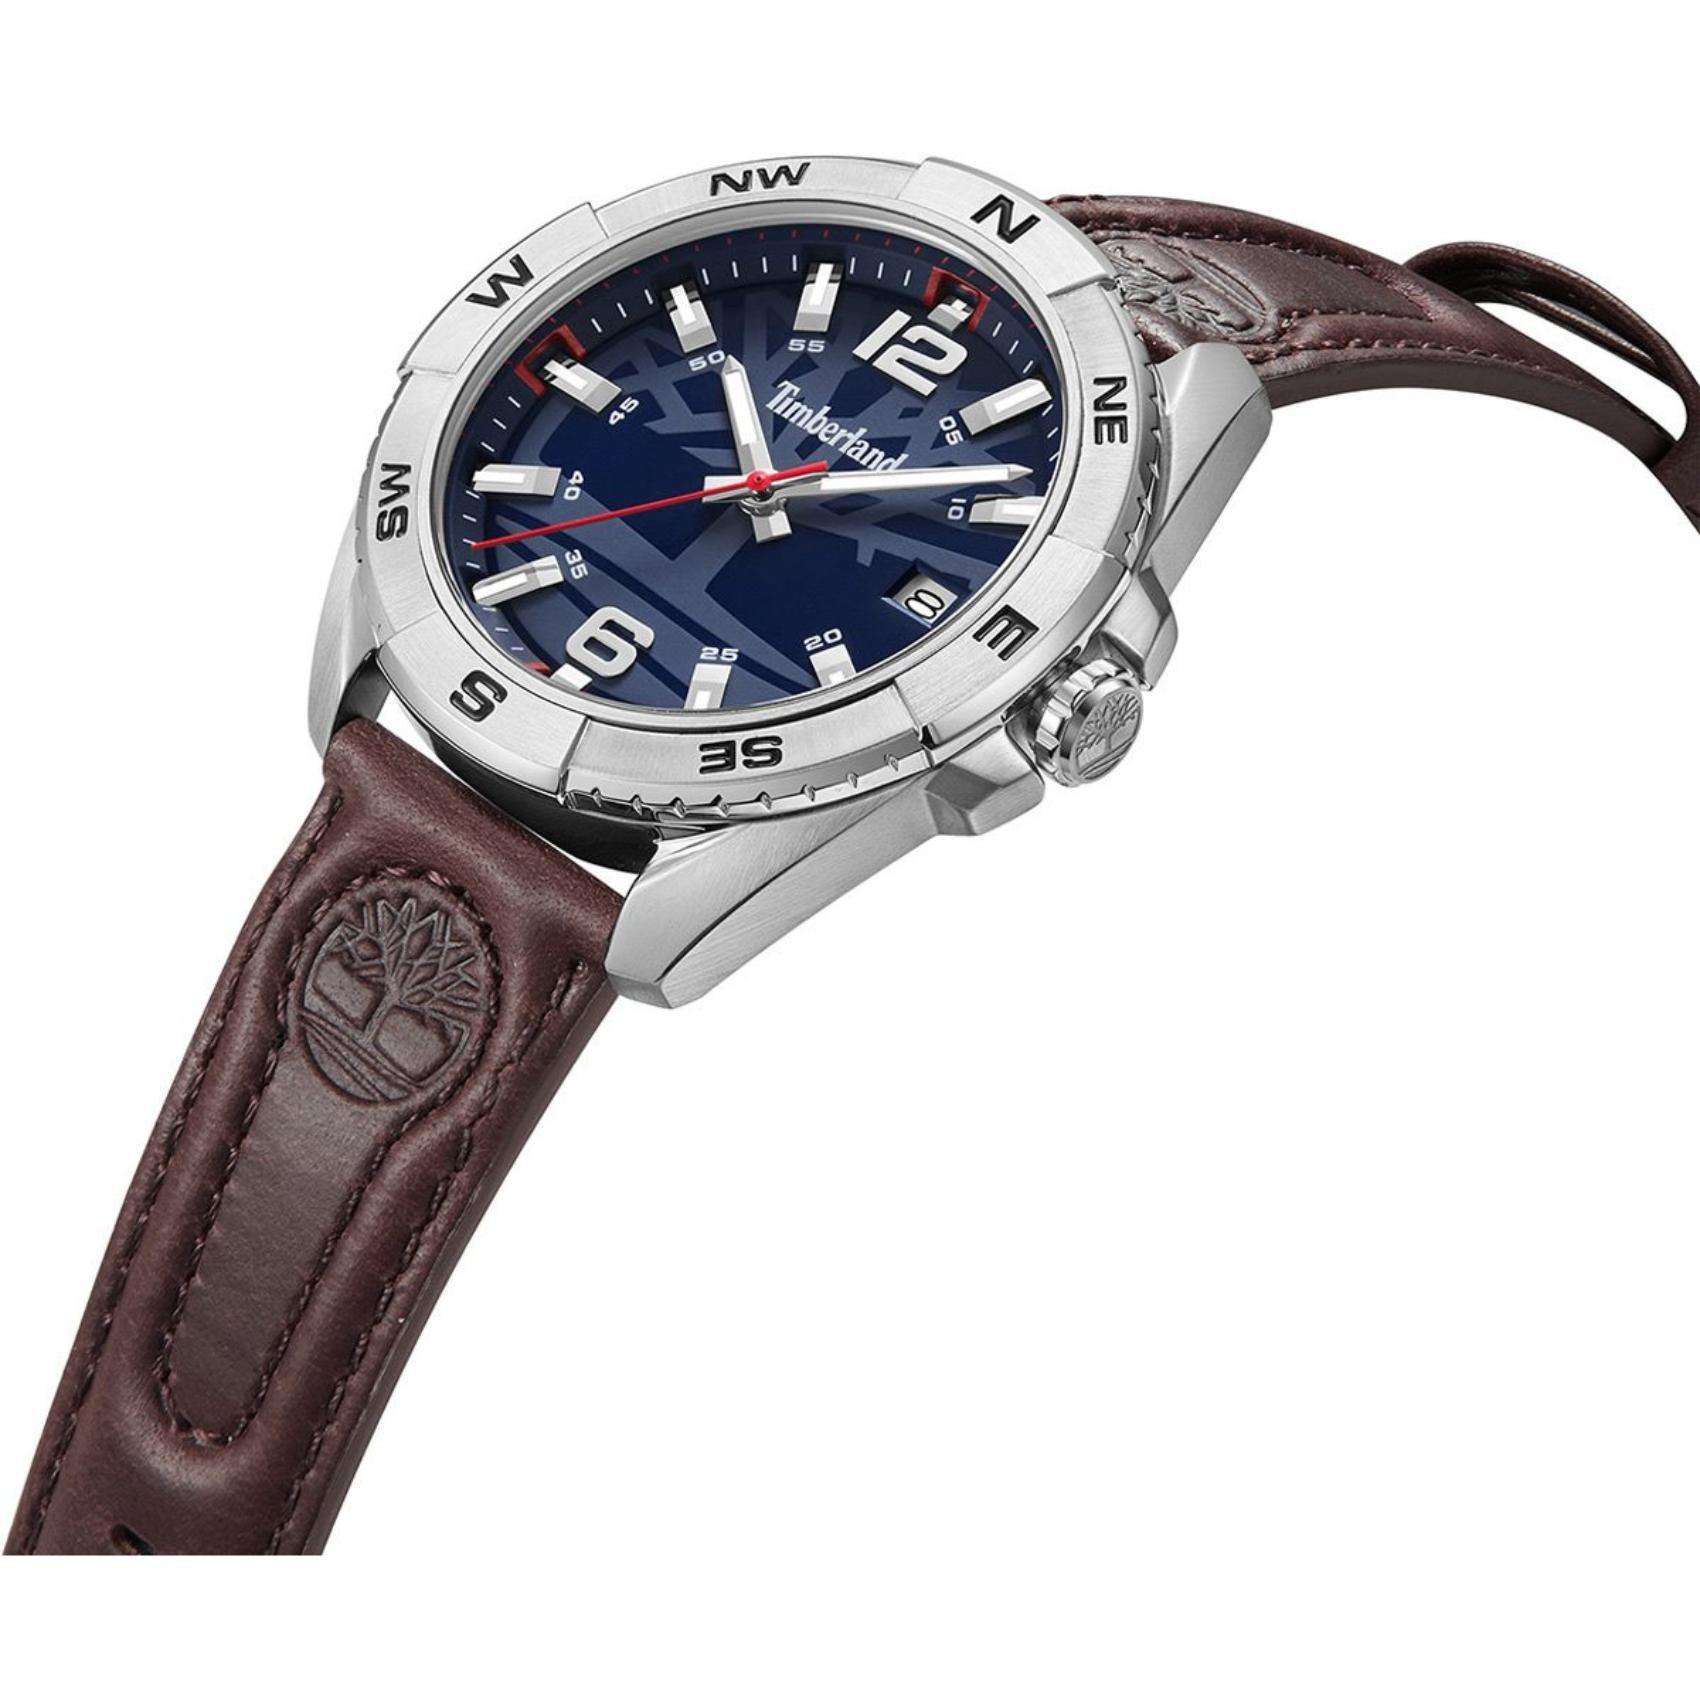 Αντρικό ρολόι Timberland Milinocket TDWGB2202102 με καφέ δερμάτινο λουράκι και μπλε καντράν διαμέτρου 44mm με ημερομηνία.